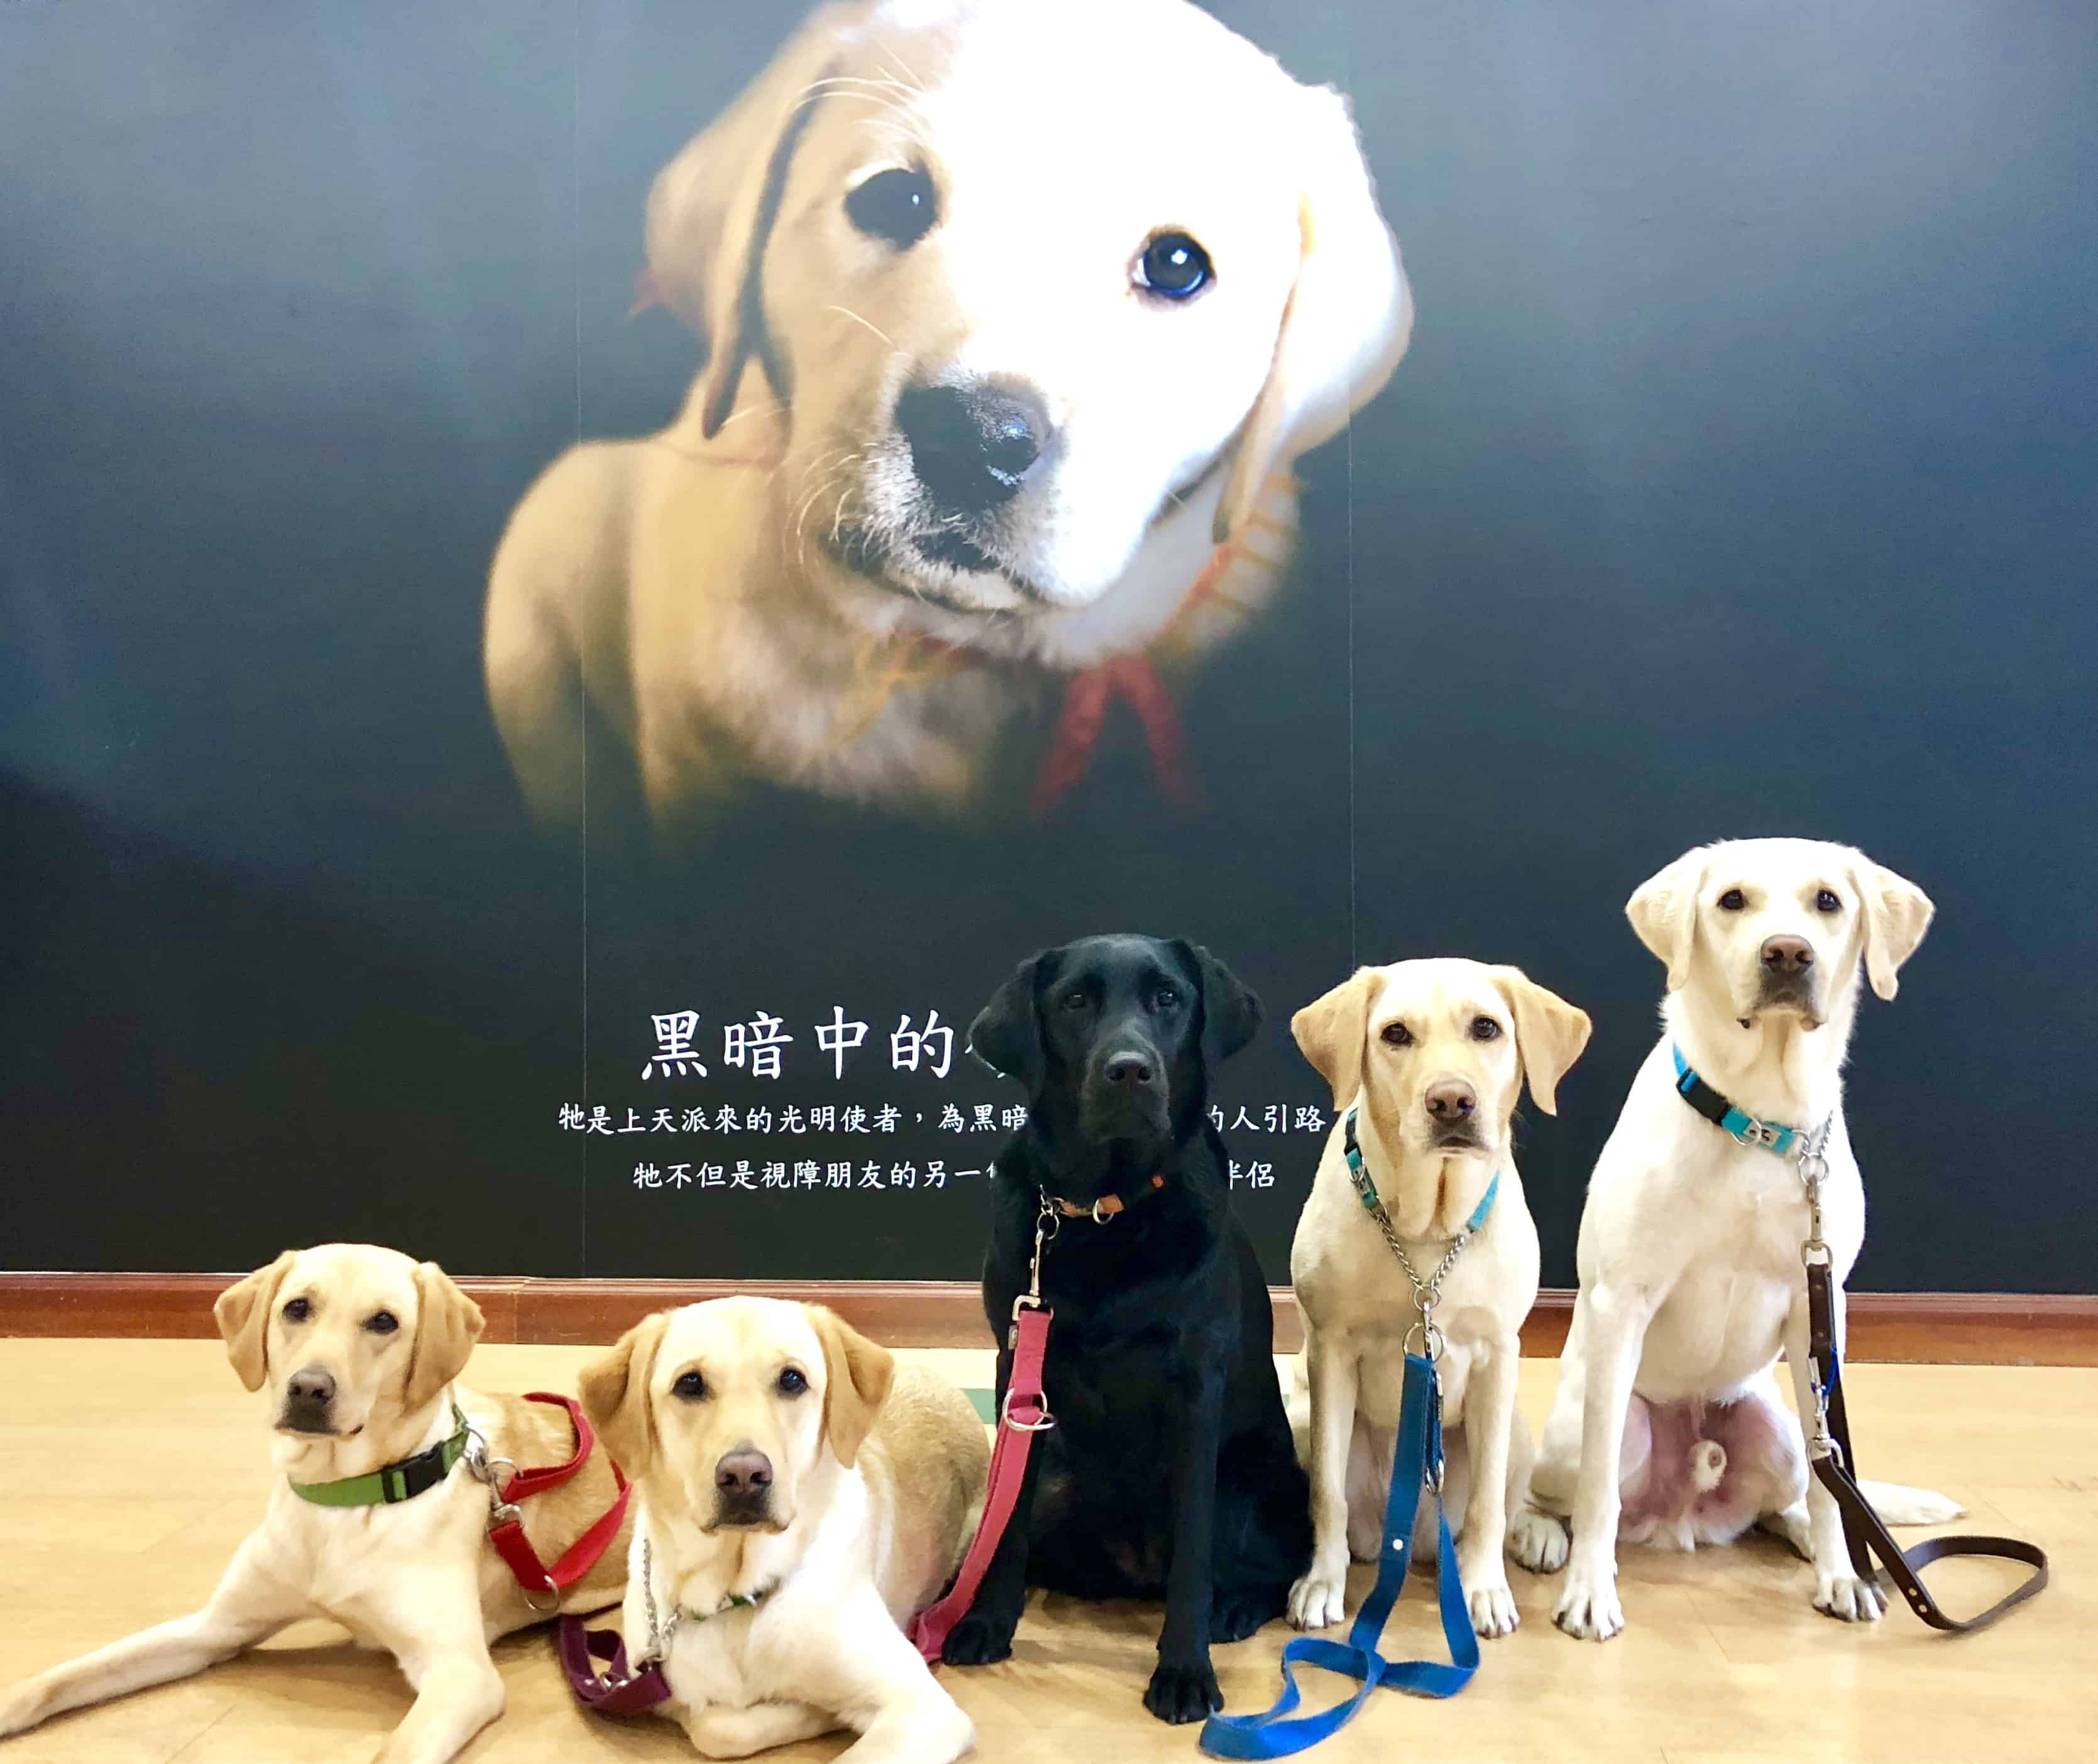 衛生福利部為提升社會大眾對於視覺障礙者引導方式及導盲犬相關知能，製作「人導法」和「導盲犬小哉問」動畫宣導短片，歡迎參考